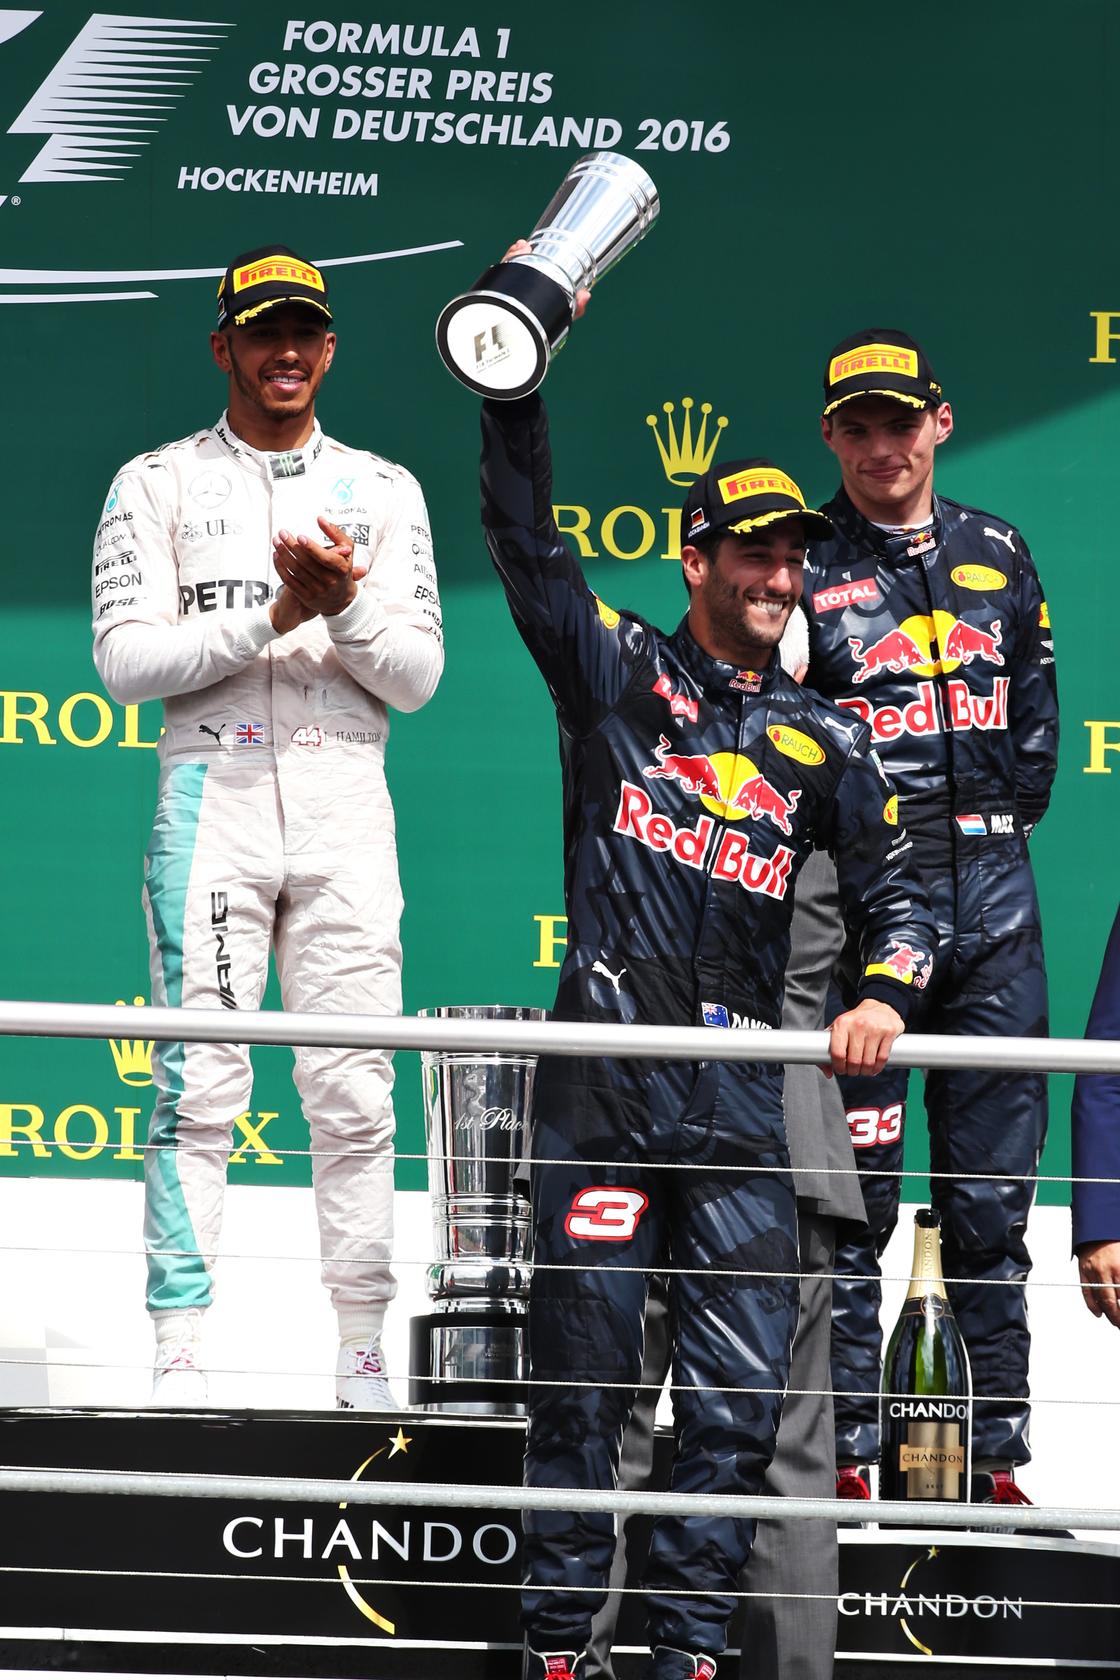 Daniel Ricciardo's wins